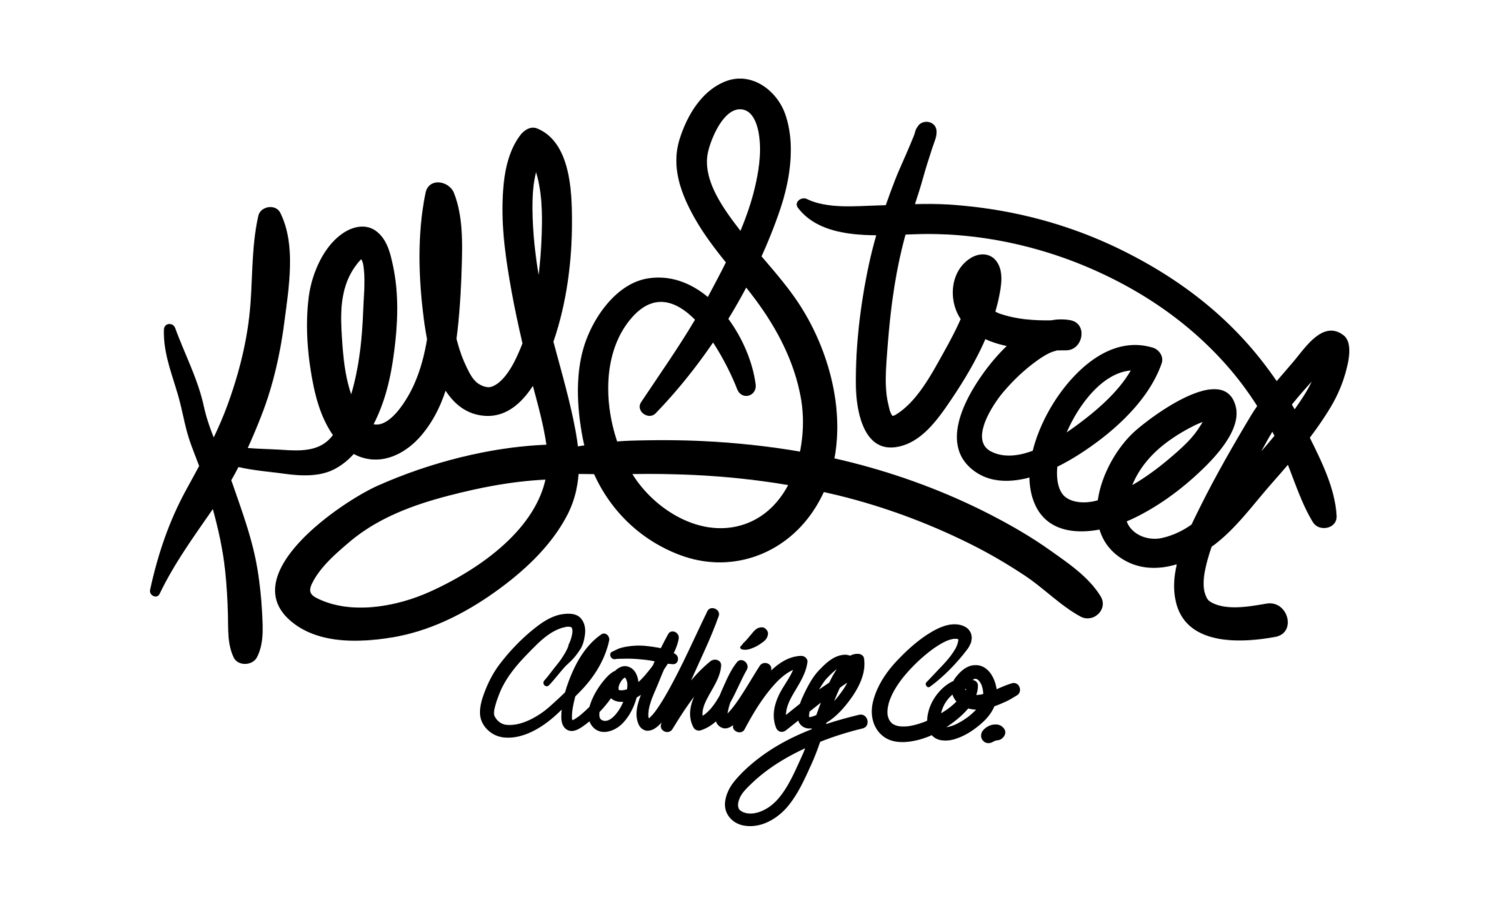 Street Clothing Logo - Key Street Clothing Co.